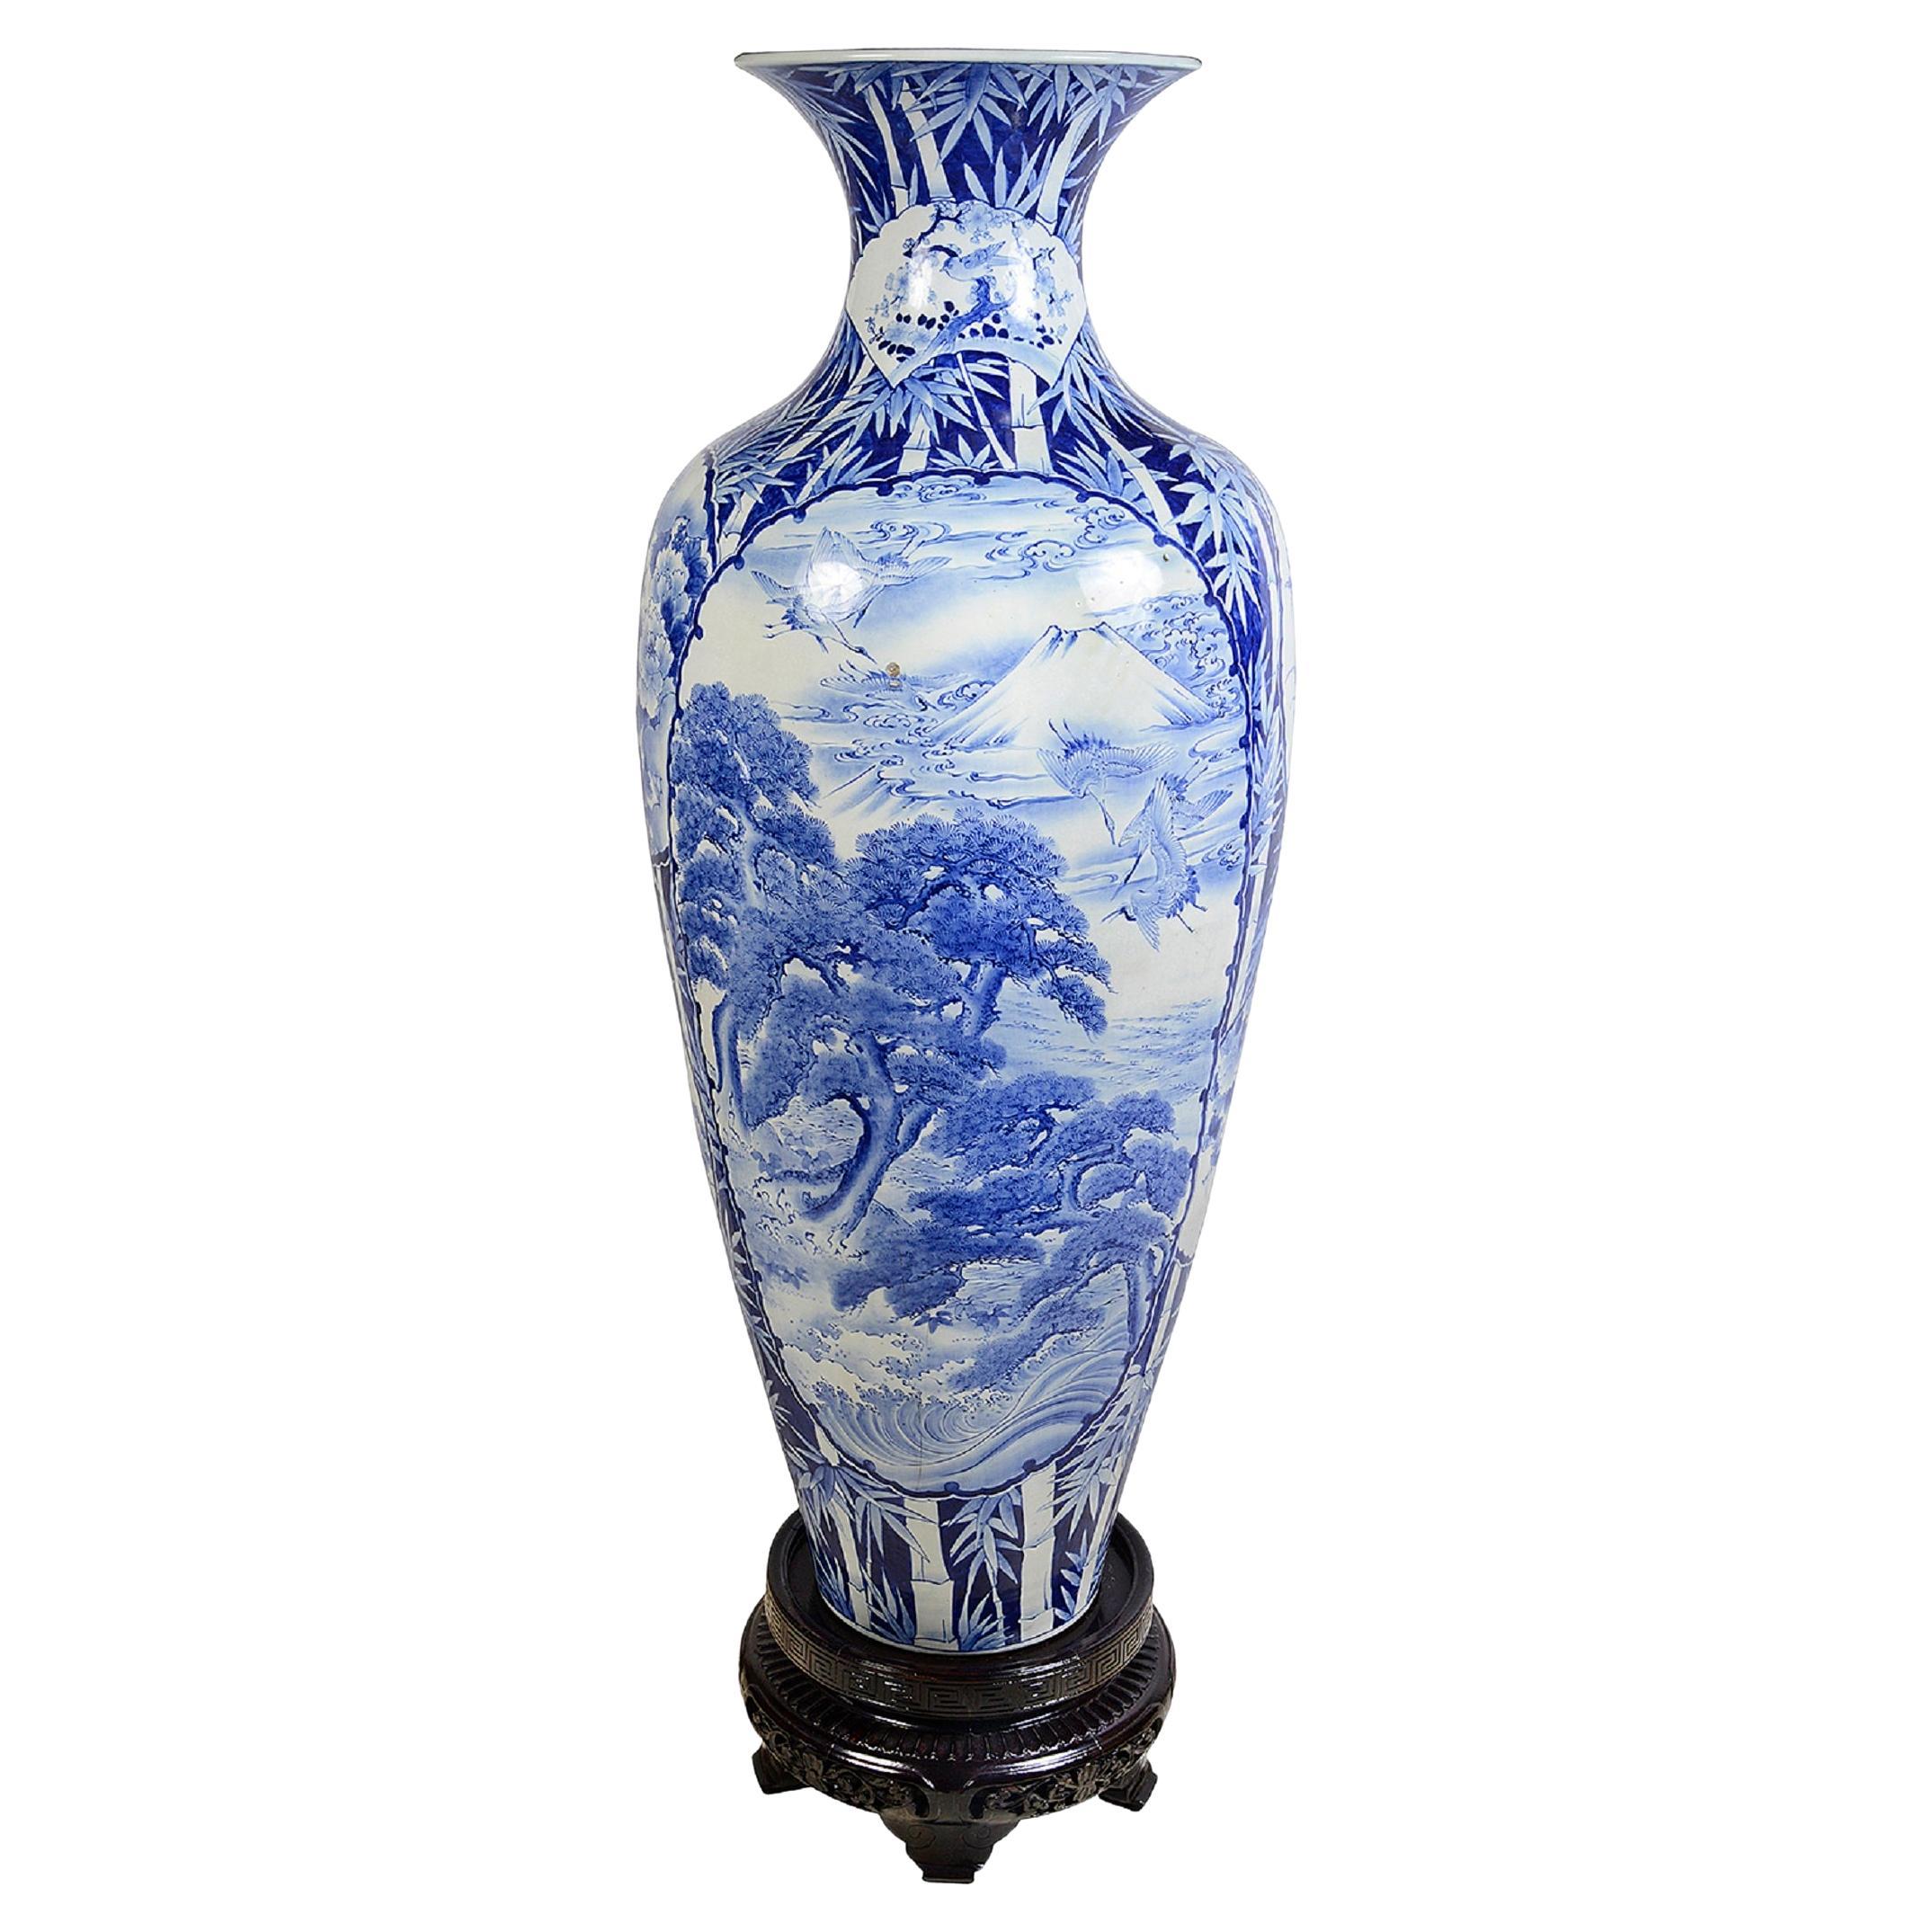 Große blau-weiße japanische Vase aus dem 19. Jahrhundert.